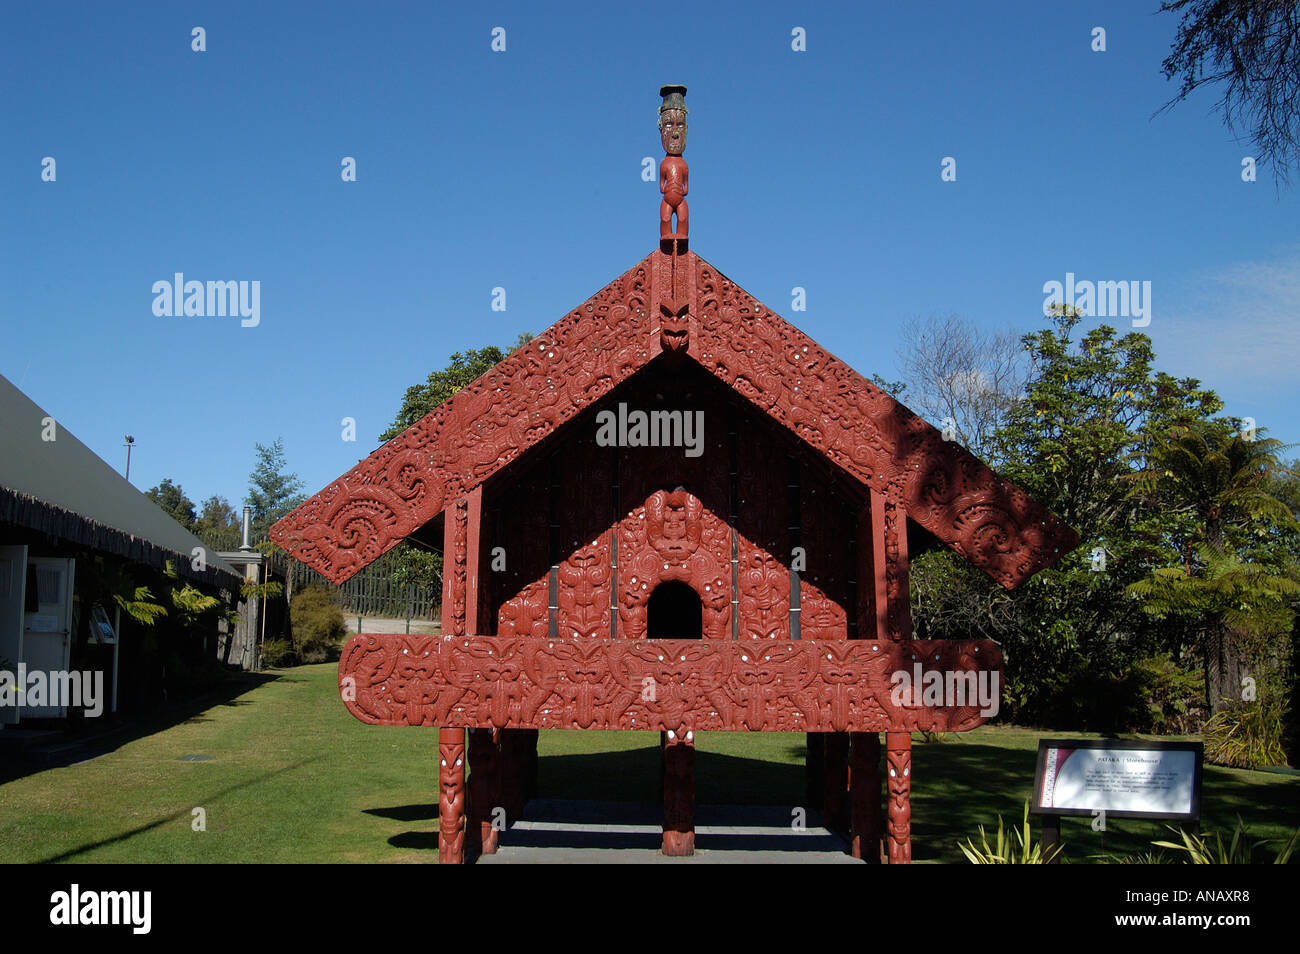 Les sculptures sur bois sur le stockage de nourriture, un village maori, whakararewa, Rotorua, île du nord, Nouvelle-Zélande Banque D'Images